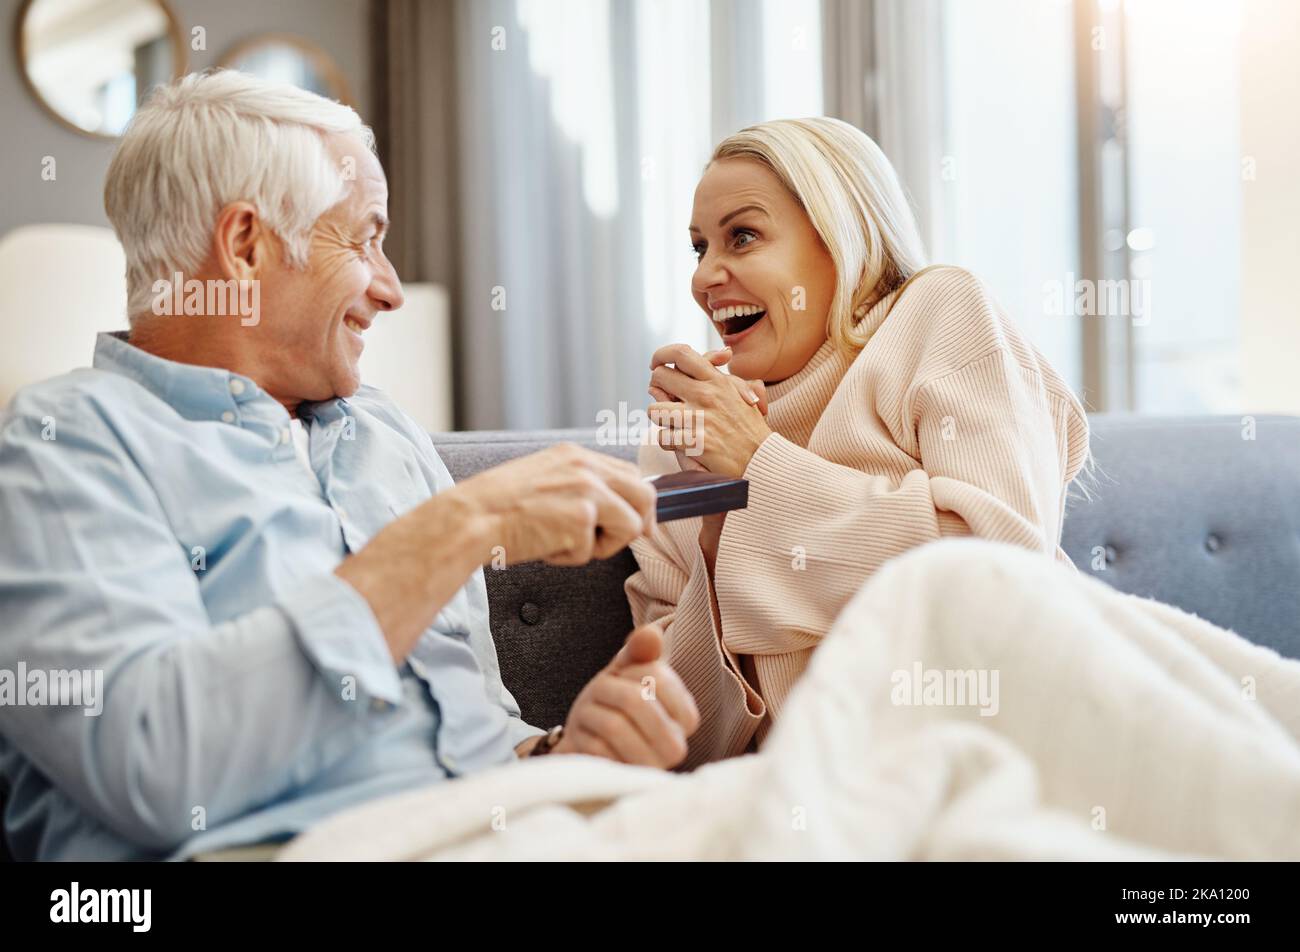 Geschenk geben ist eine der größten Freuden des Lebens. Reifer Mann gibt seiner Frau ein Geschenk auf dem Sofa zu Hause. Stockfoto